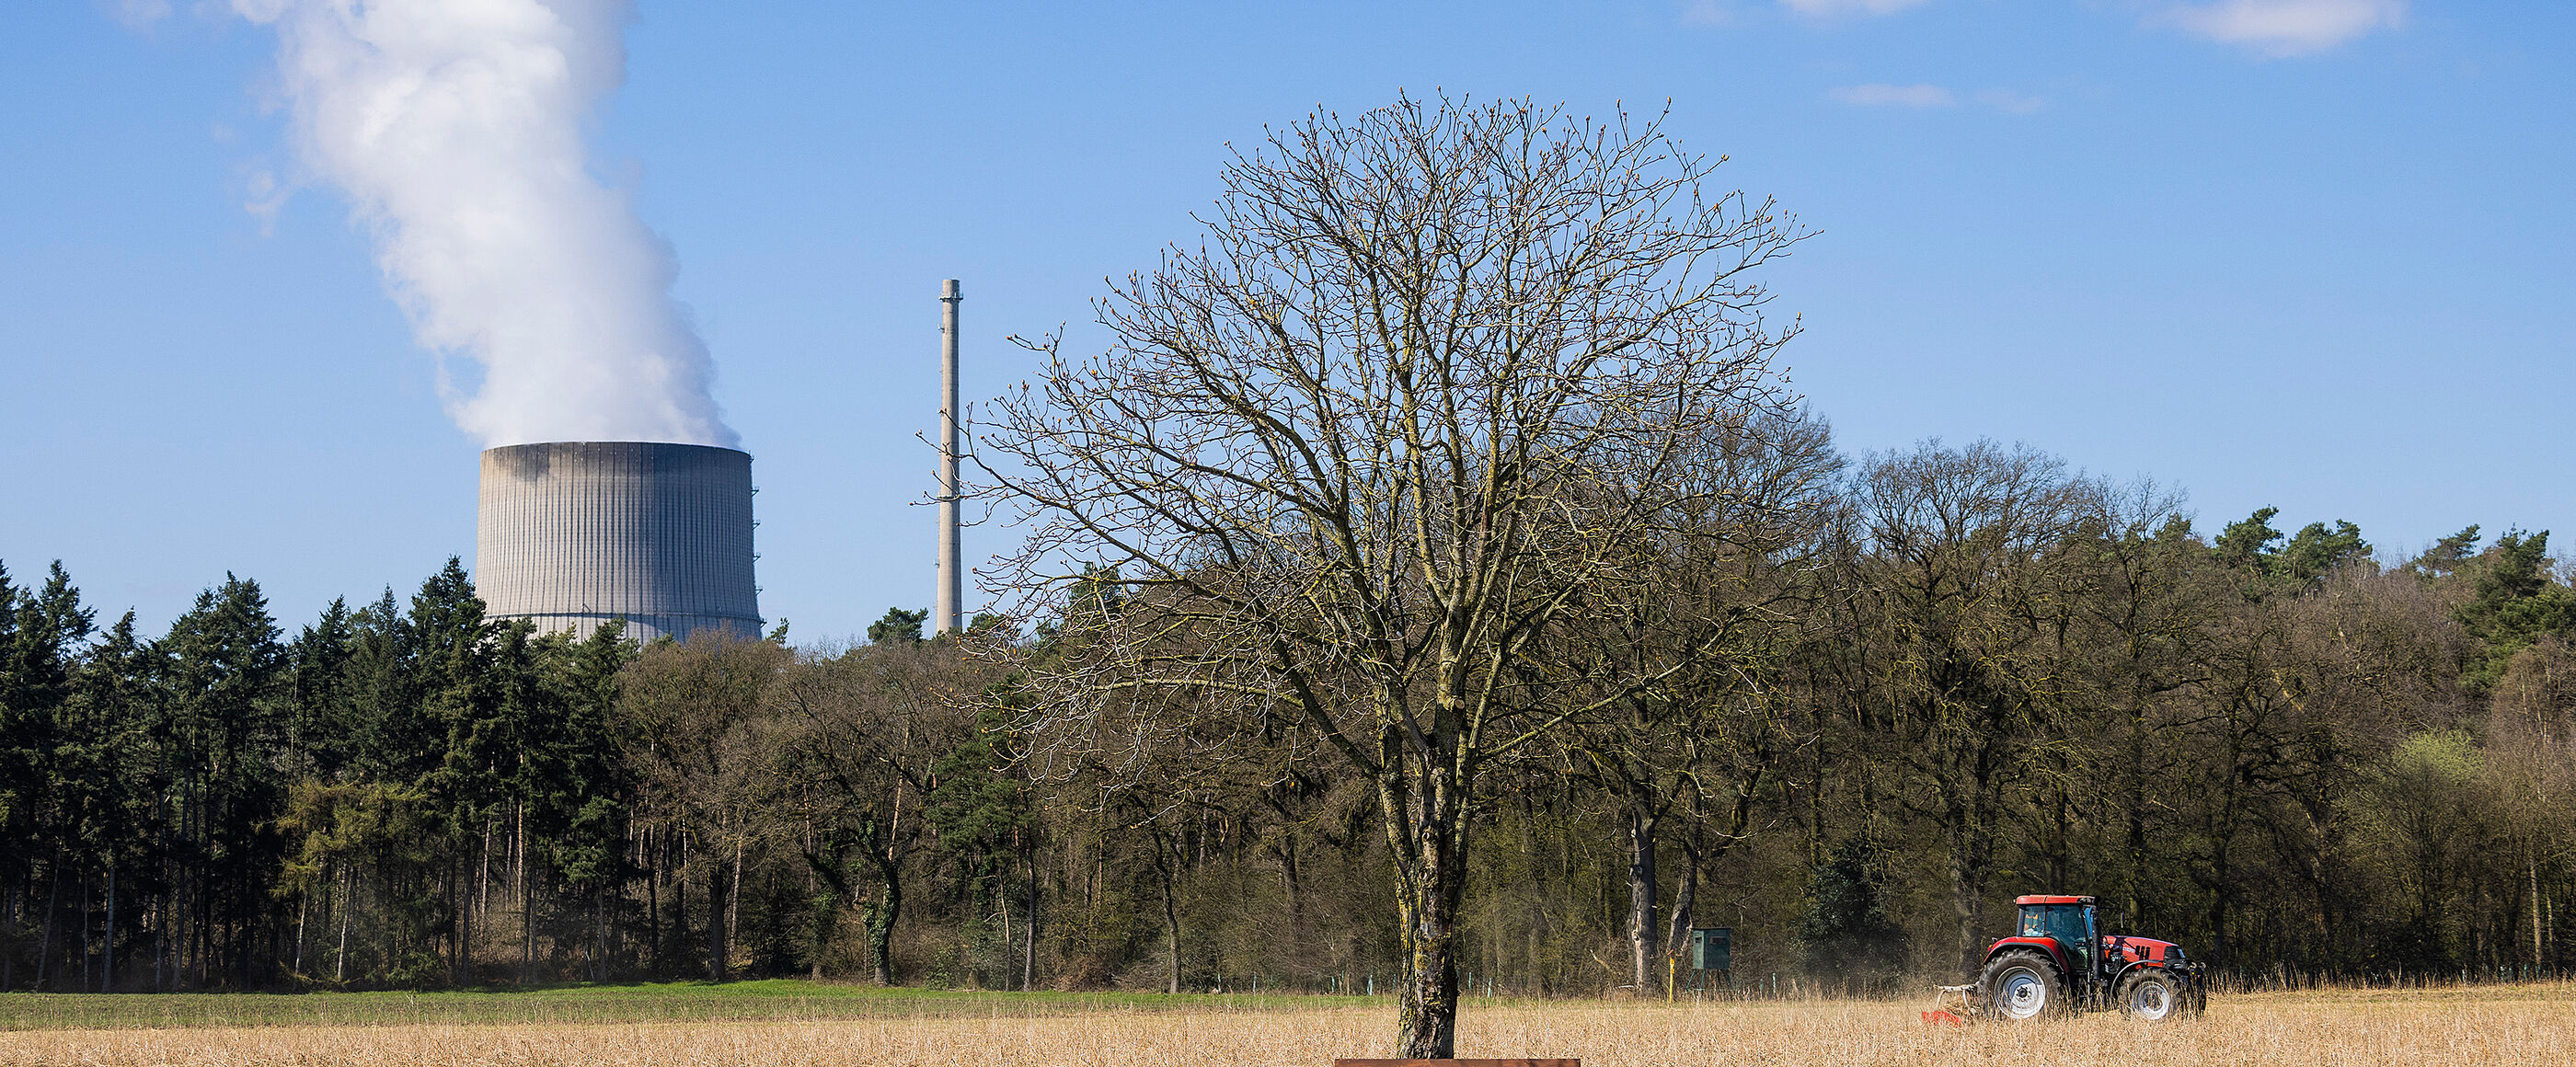 Eine Landschaft mit Baum und Bank; ein Trecker fährt über ein Feld, im Hintergrund quillt Dampf aus einem Kühlturm.